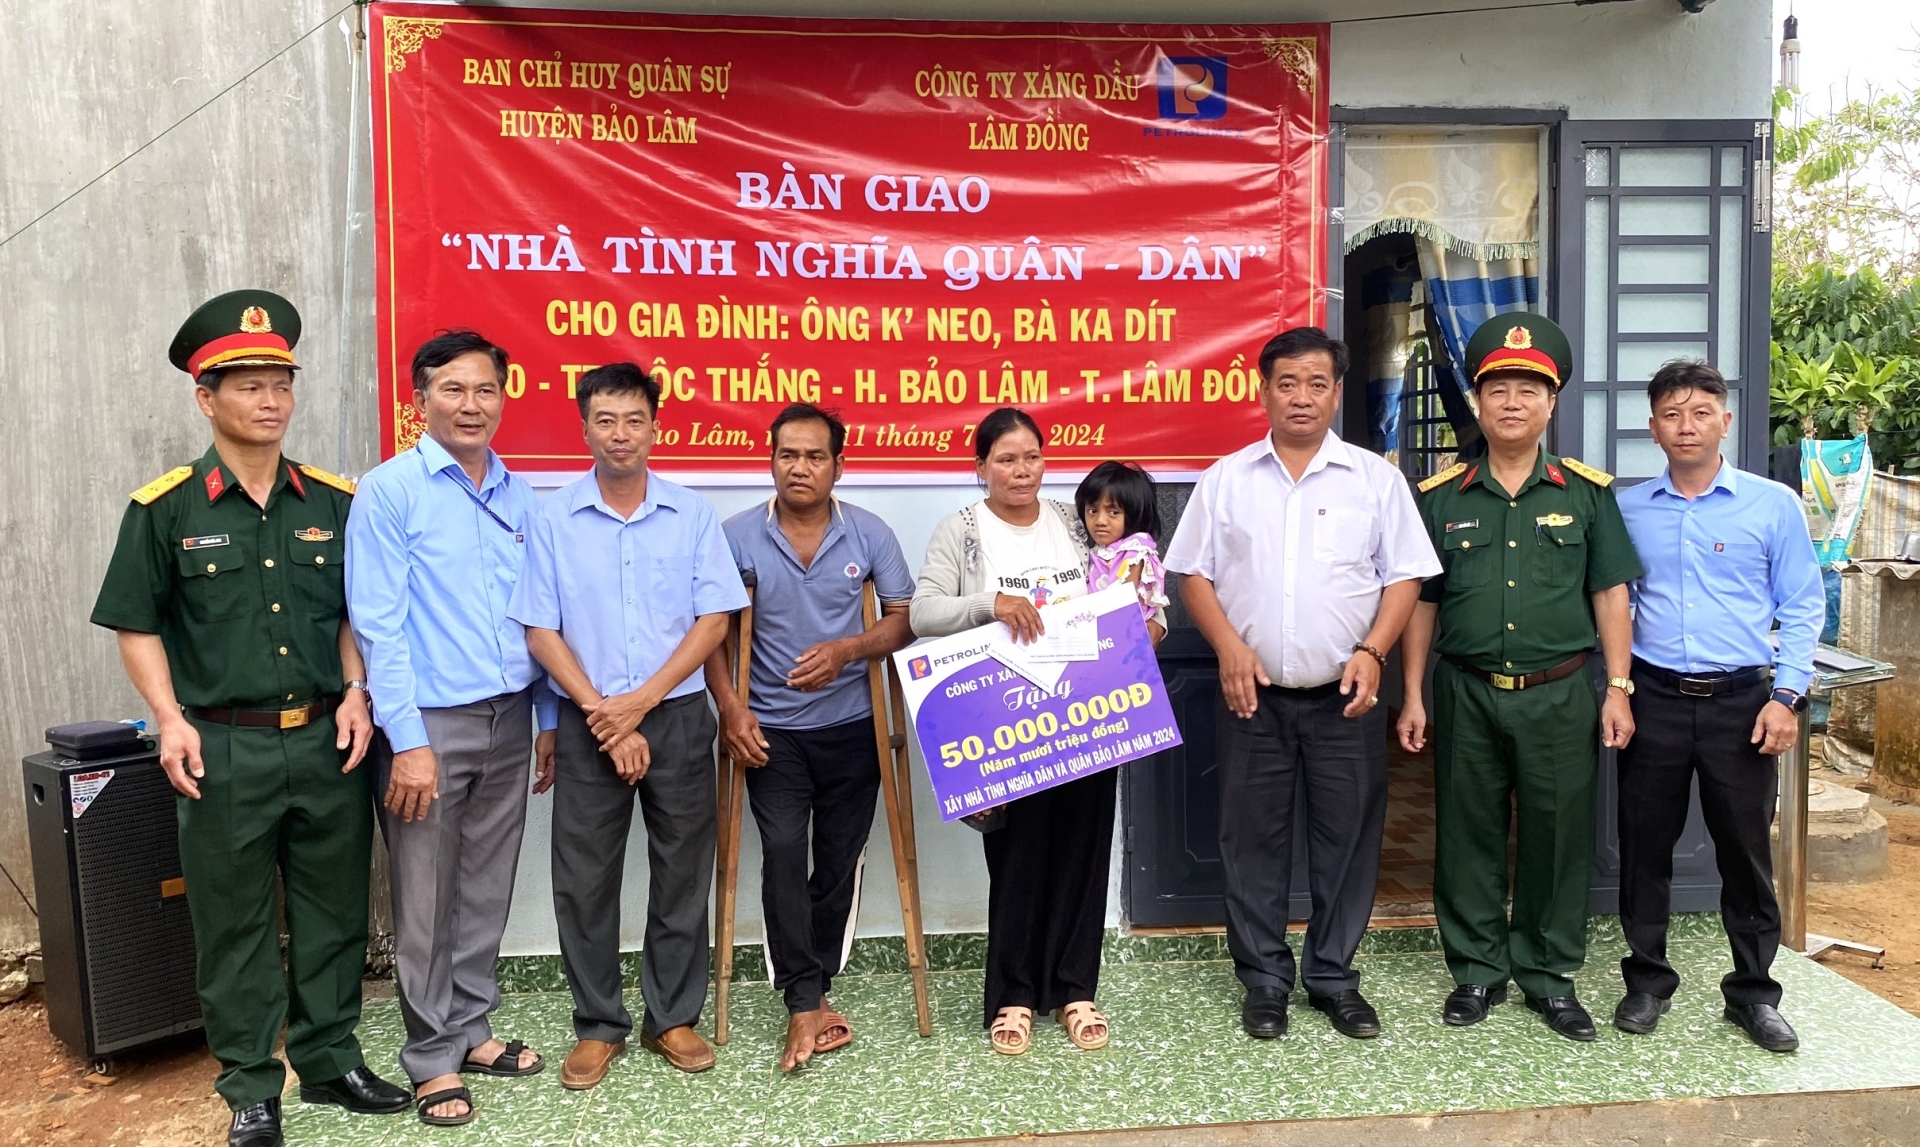 Ban Chỉ huy Quân sự huyện Bảo Lâm và đại diện Công ty Xăng dầu Lâm Đồng trao biểu trưng hỗ trợ xây dựng nhà cho gia đình ông KNeo, bà KDít